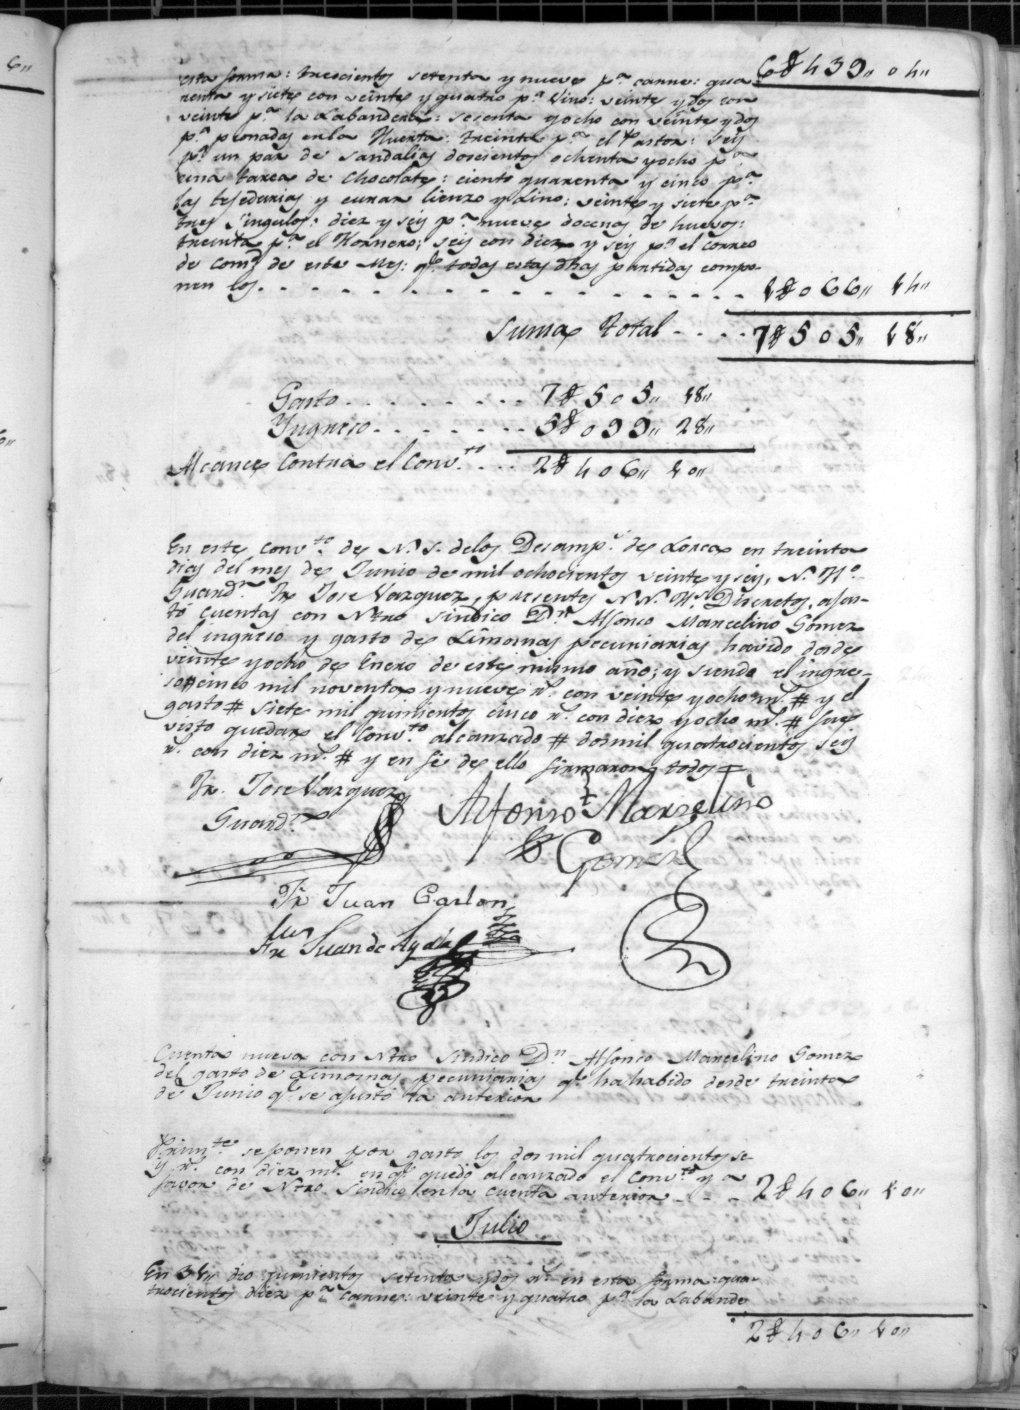 Cuentas generales del Convento de los Desamparados de Lorca, dadas por Jaime Clavere de Casou, síndico, a Juan Guirao, guardián. Años 1800-1835.